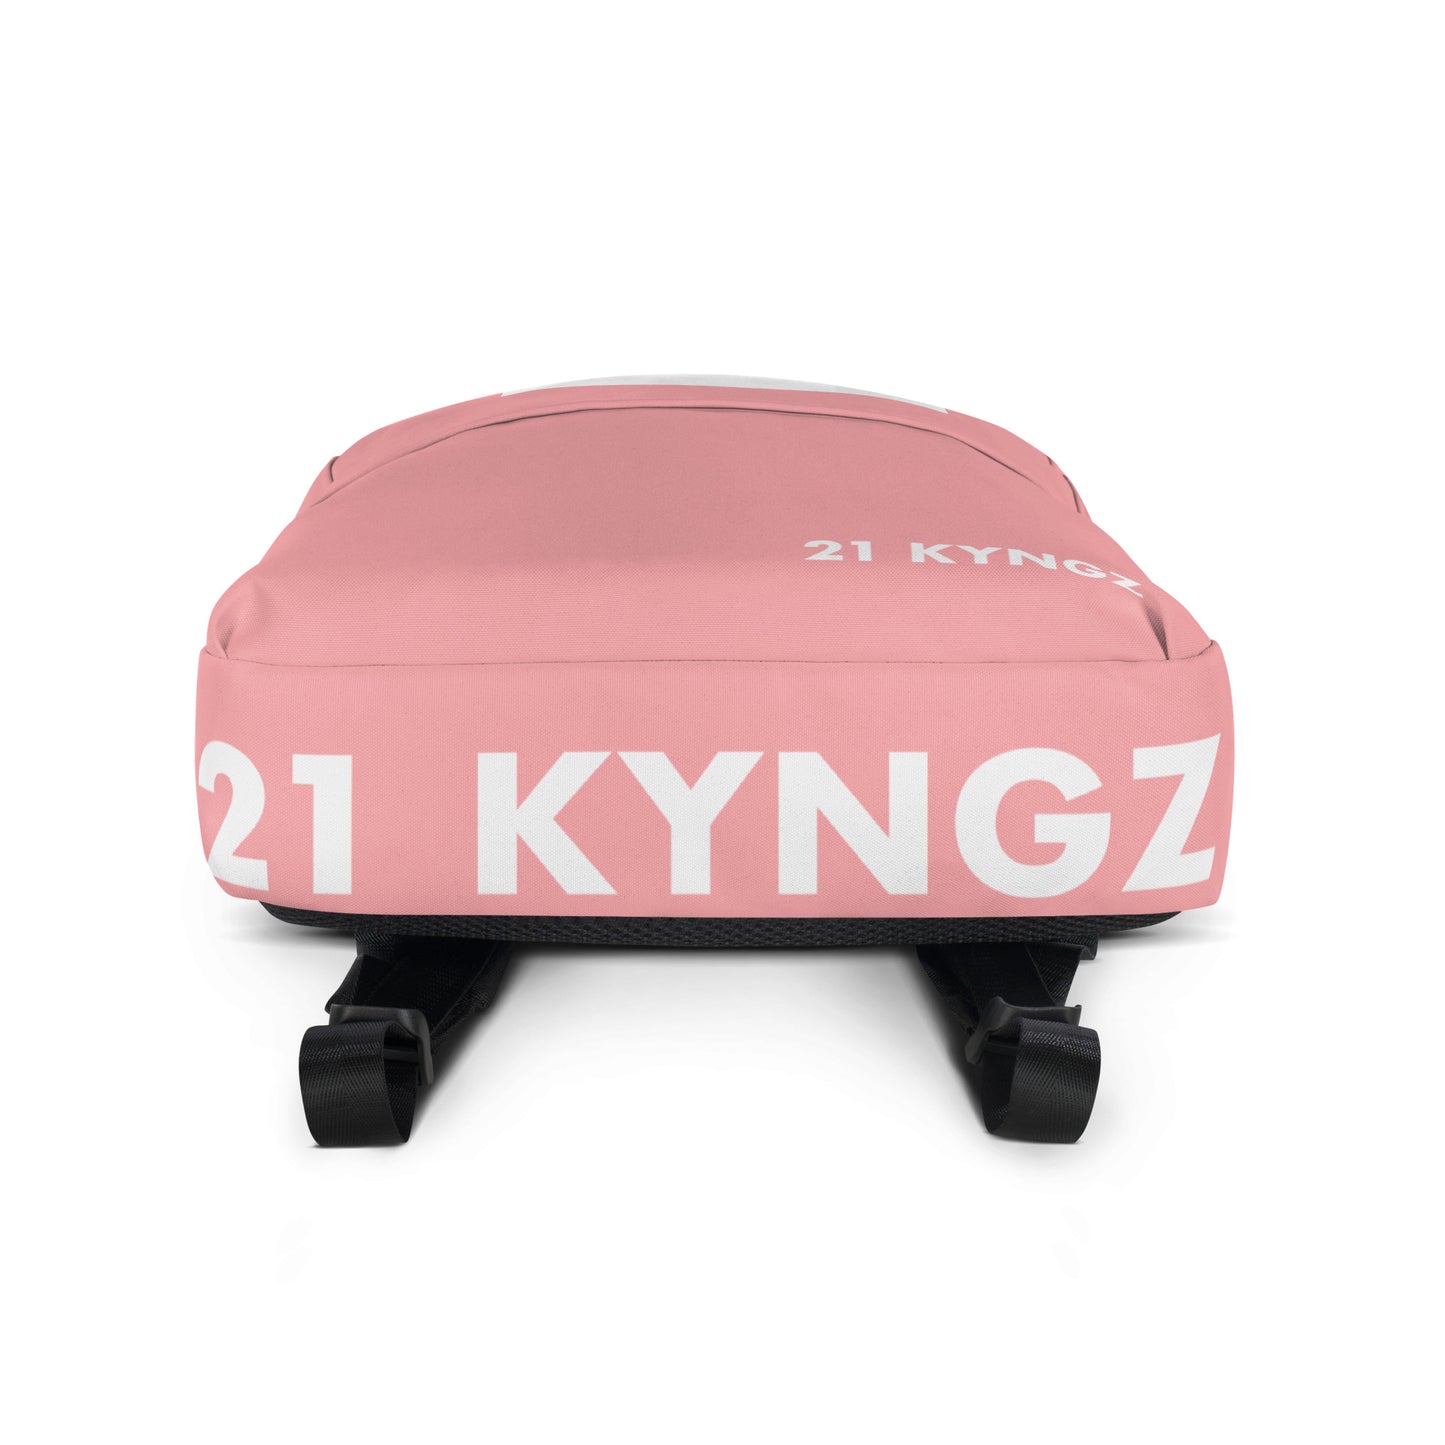 21 KYNGZ Pink Backpack